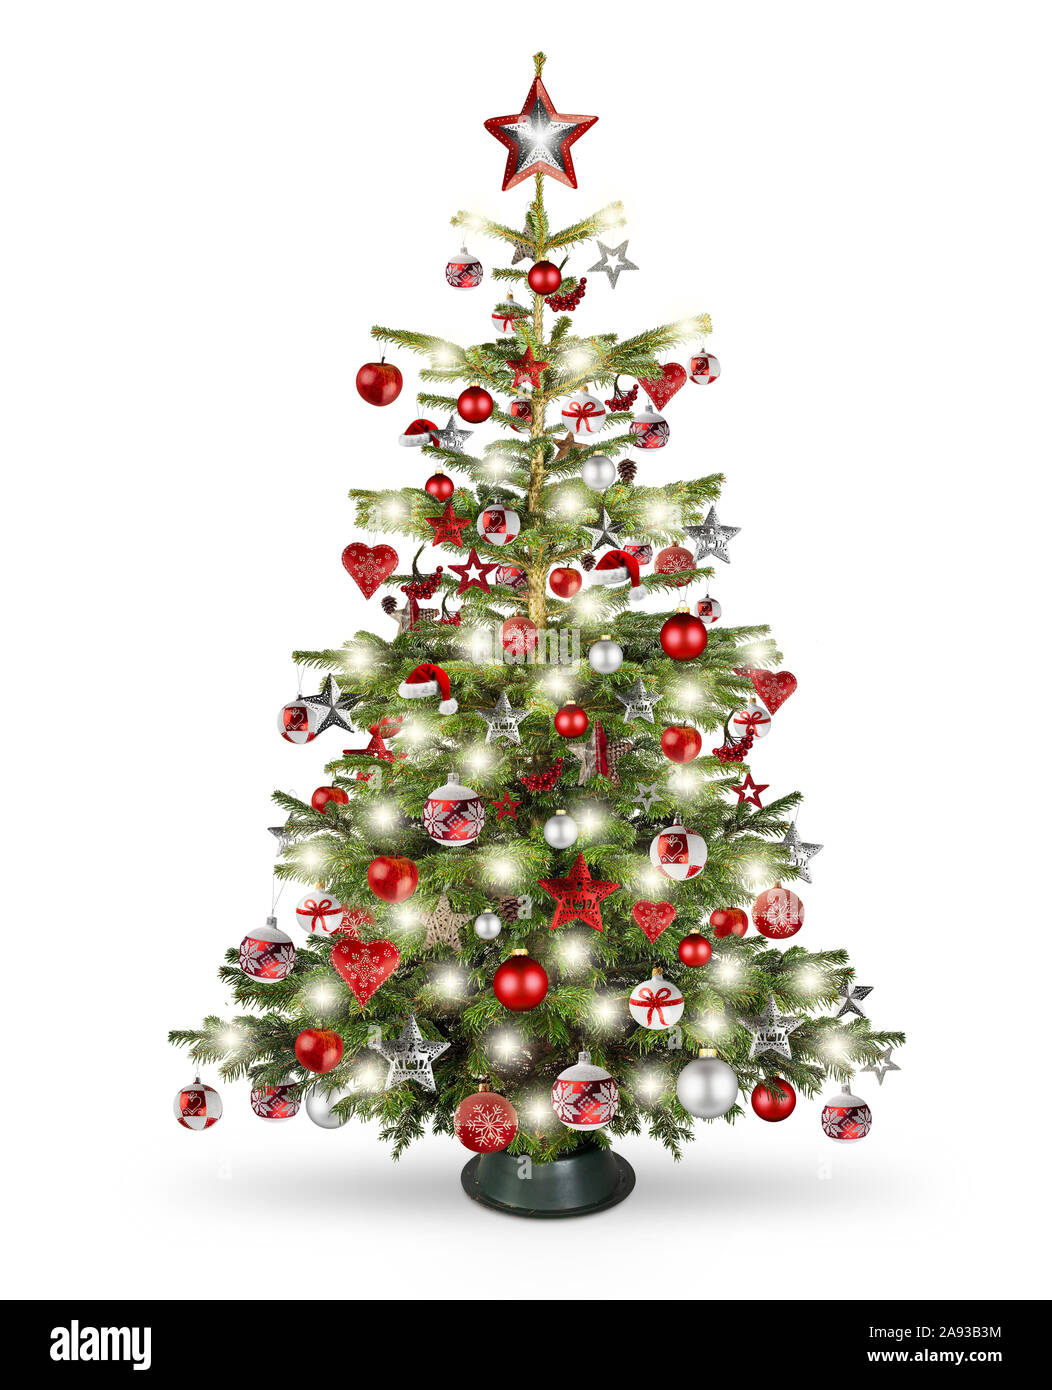 Naturale reale nordmann xmas albero di natale con rosso argento e decorazioni in legno. ninnolo star cuore e luminosa led isolato su sfondo bianco Foto Stock